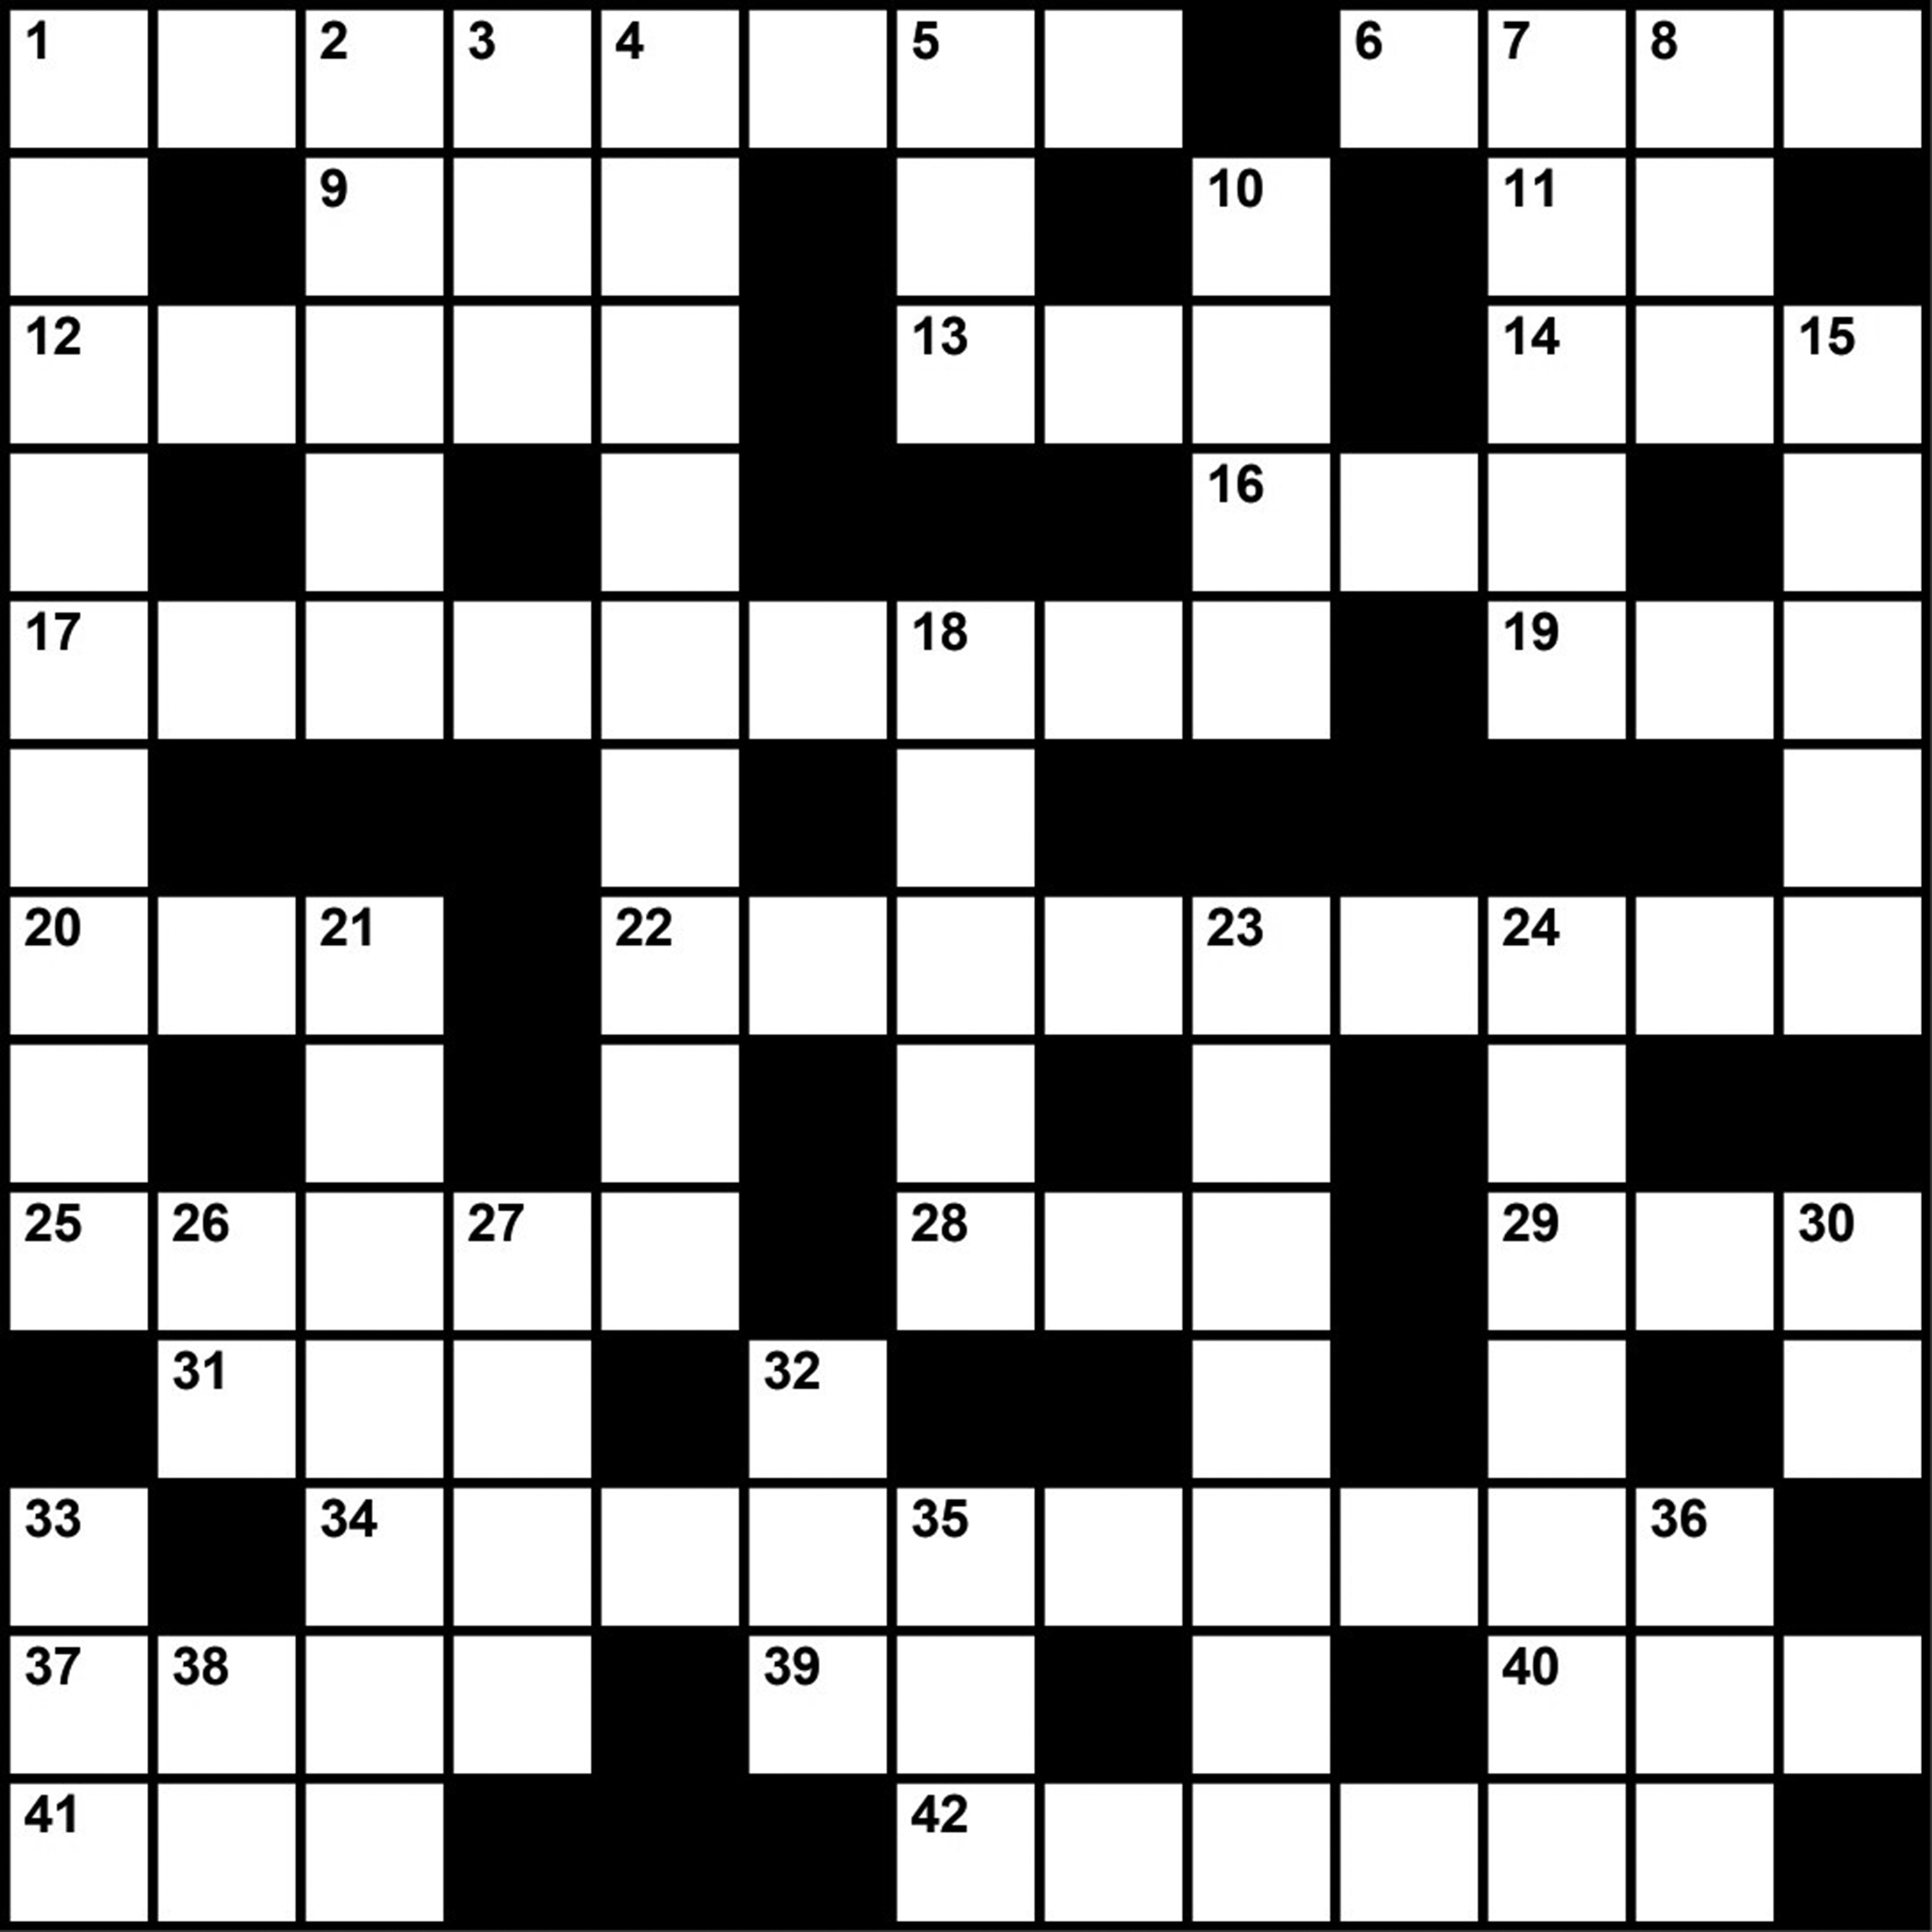 Crossword Puzzle: Sleep Medicine-Themed Clues (January 2019) - Sleep - Printable Crossword Puzzle Boston Globe